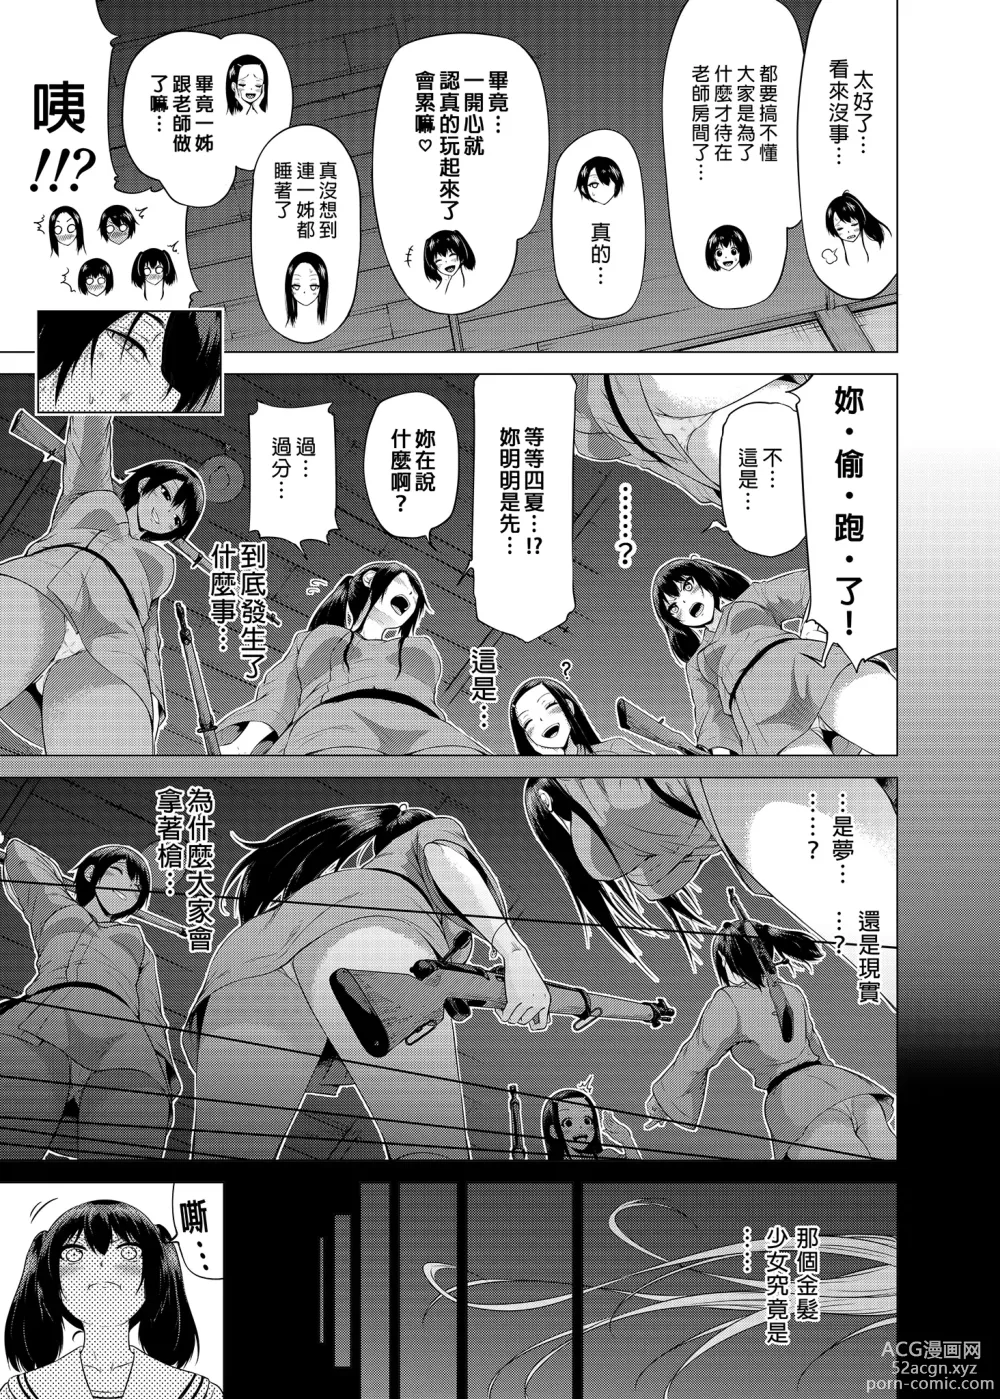 Page 5 of manga nanaka no rakuen3